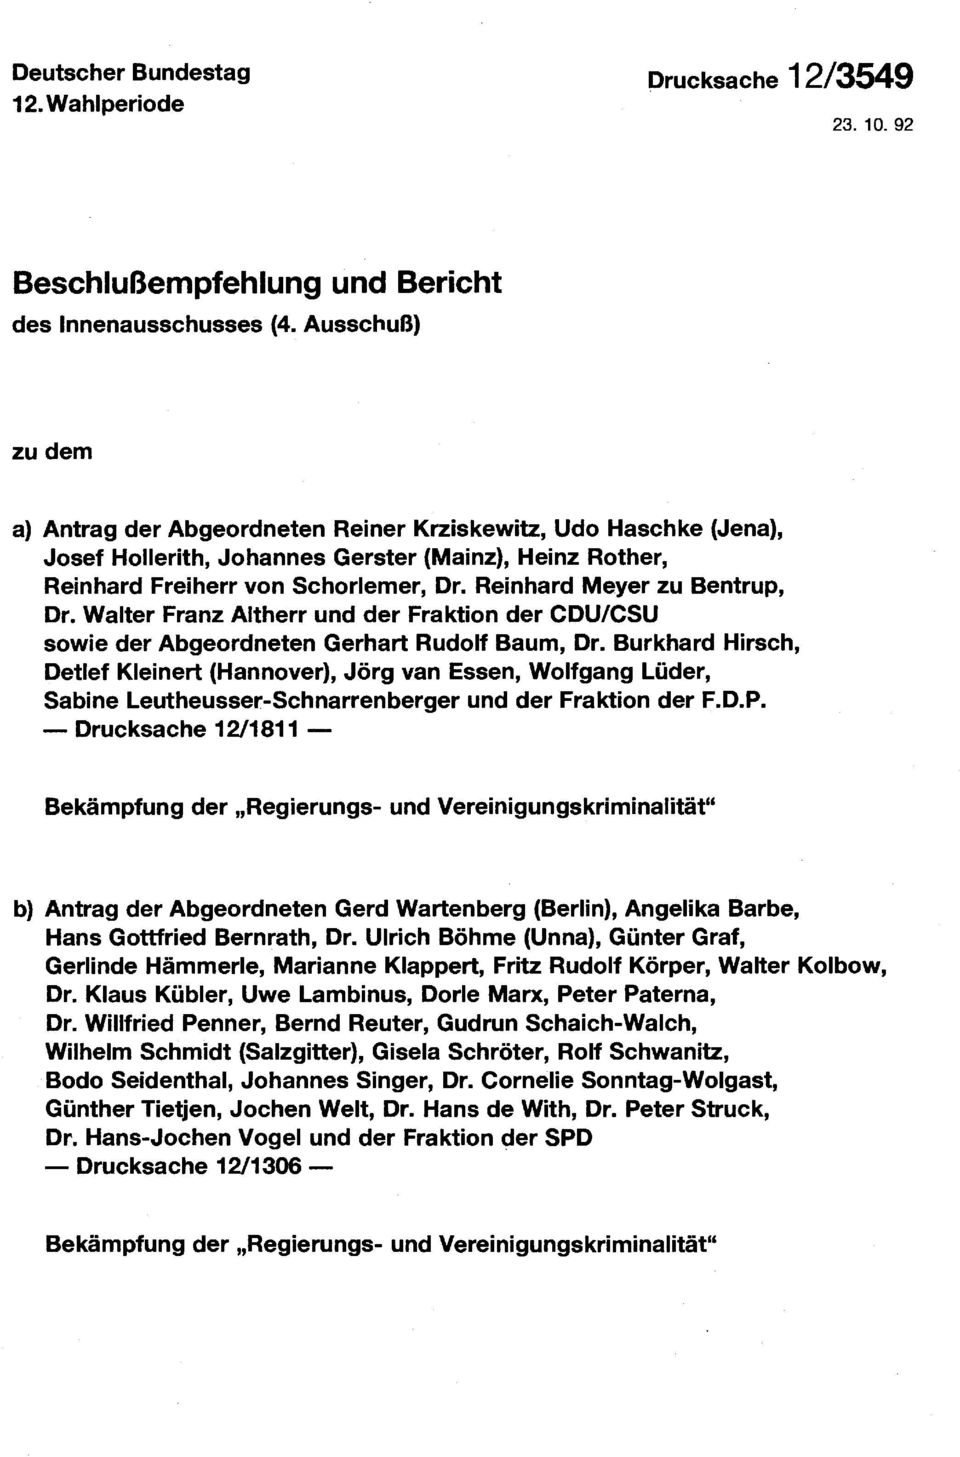 Reinhard Meyer zu Bentrup, Dr. Walter Franz Altherr und der Fraktion der CDU/CSU sowie der Abgeordneten Gerhart Rudolf Baum, Dr.